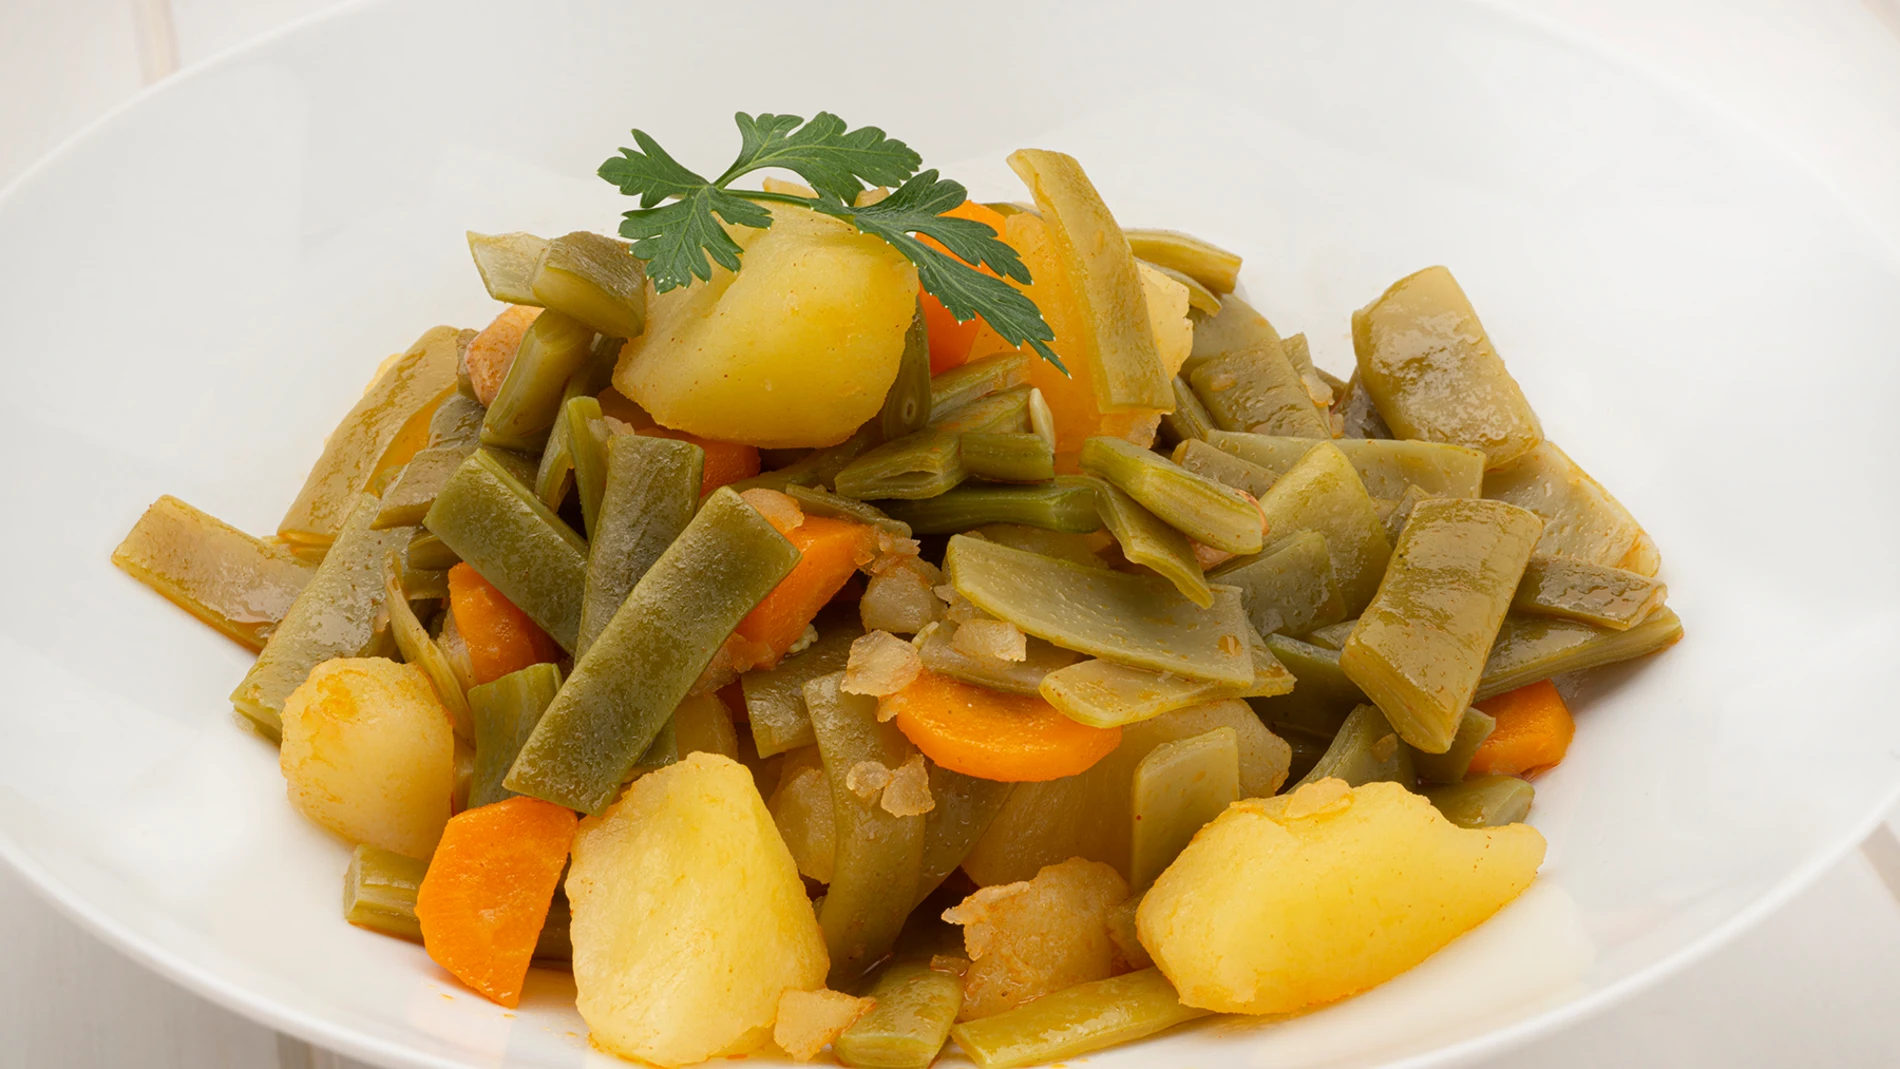 Receta de judías verdes con patatas, de Karlos Arguiñano